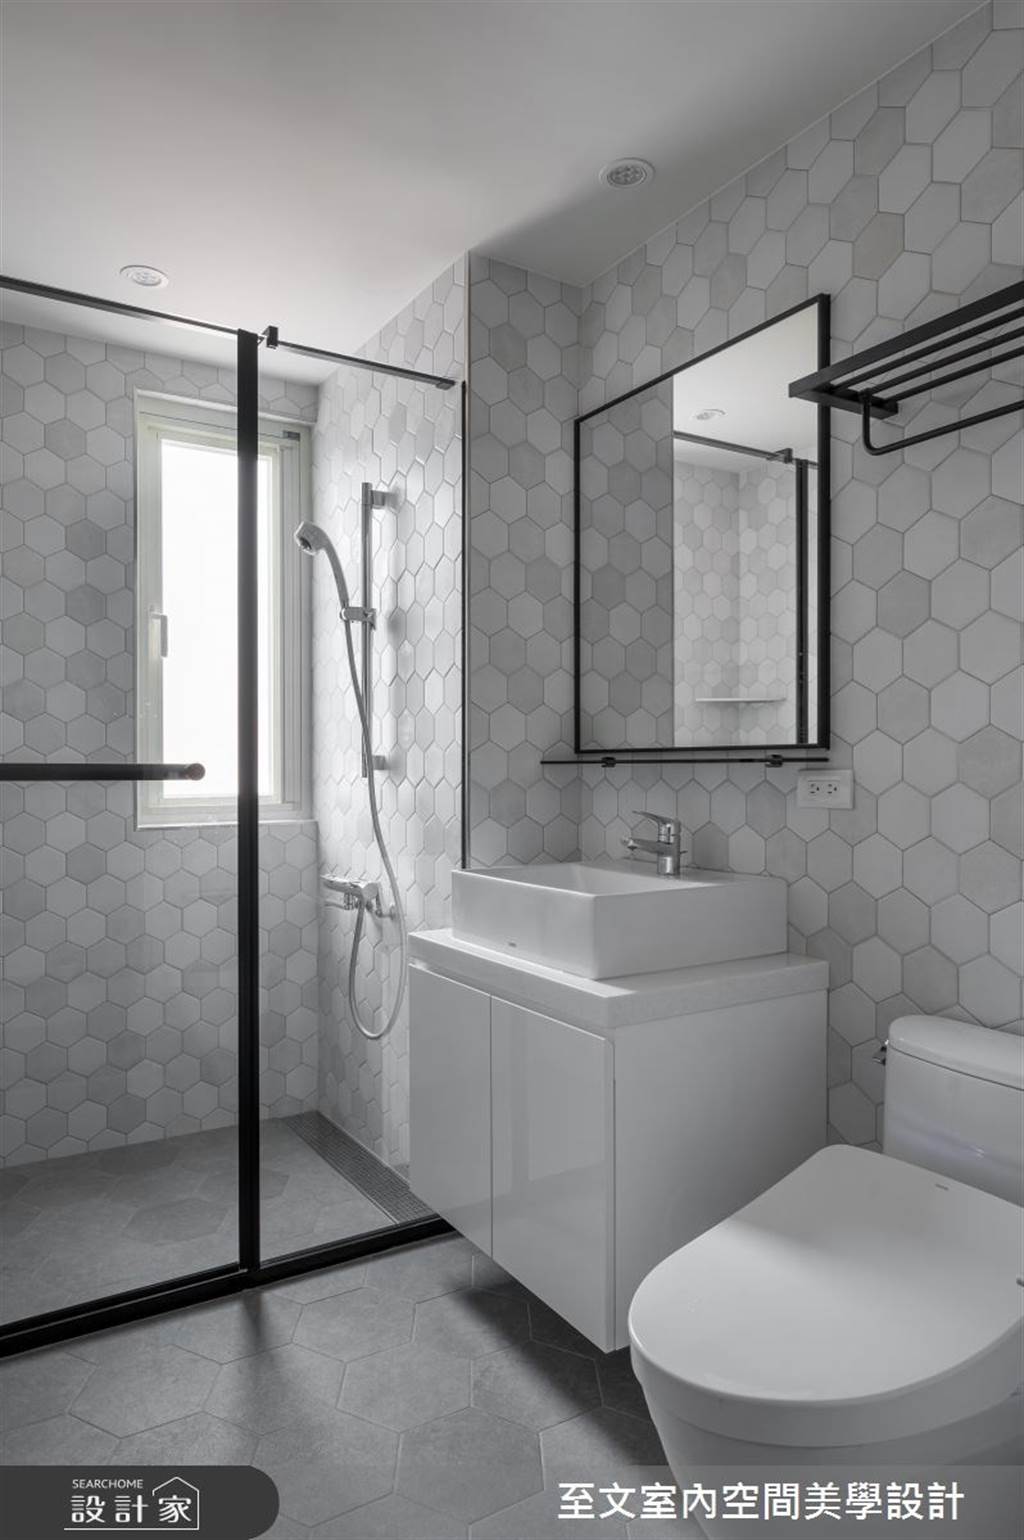 磁磚挑對，浴室不必刷半天！耐髒磁磚推薦 & 屋主清潔感想
